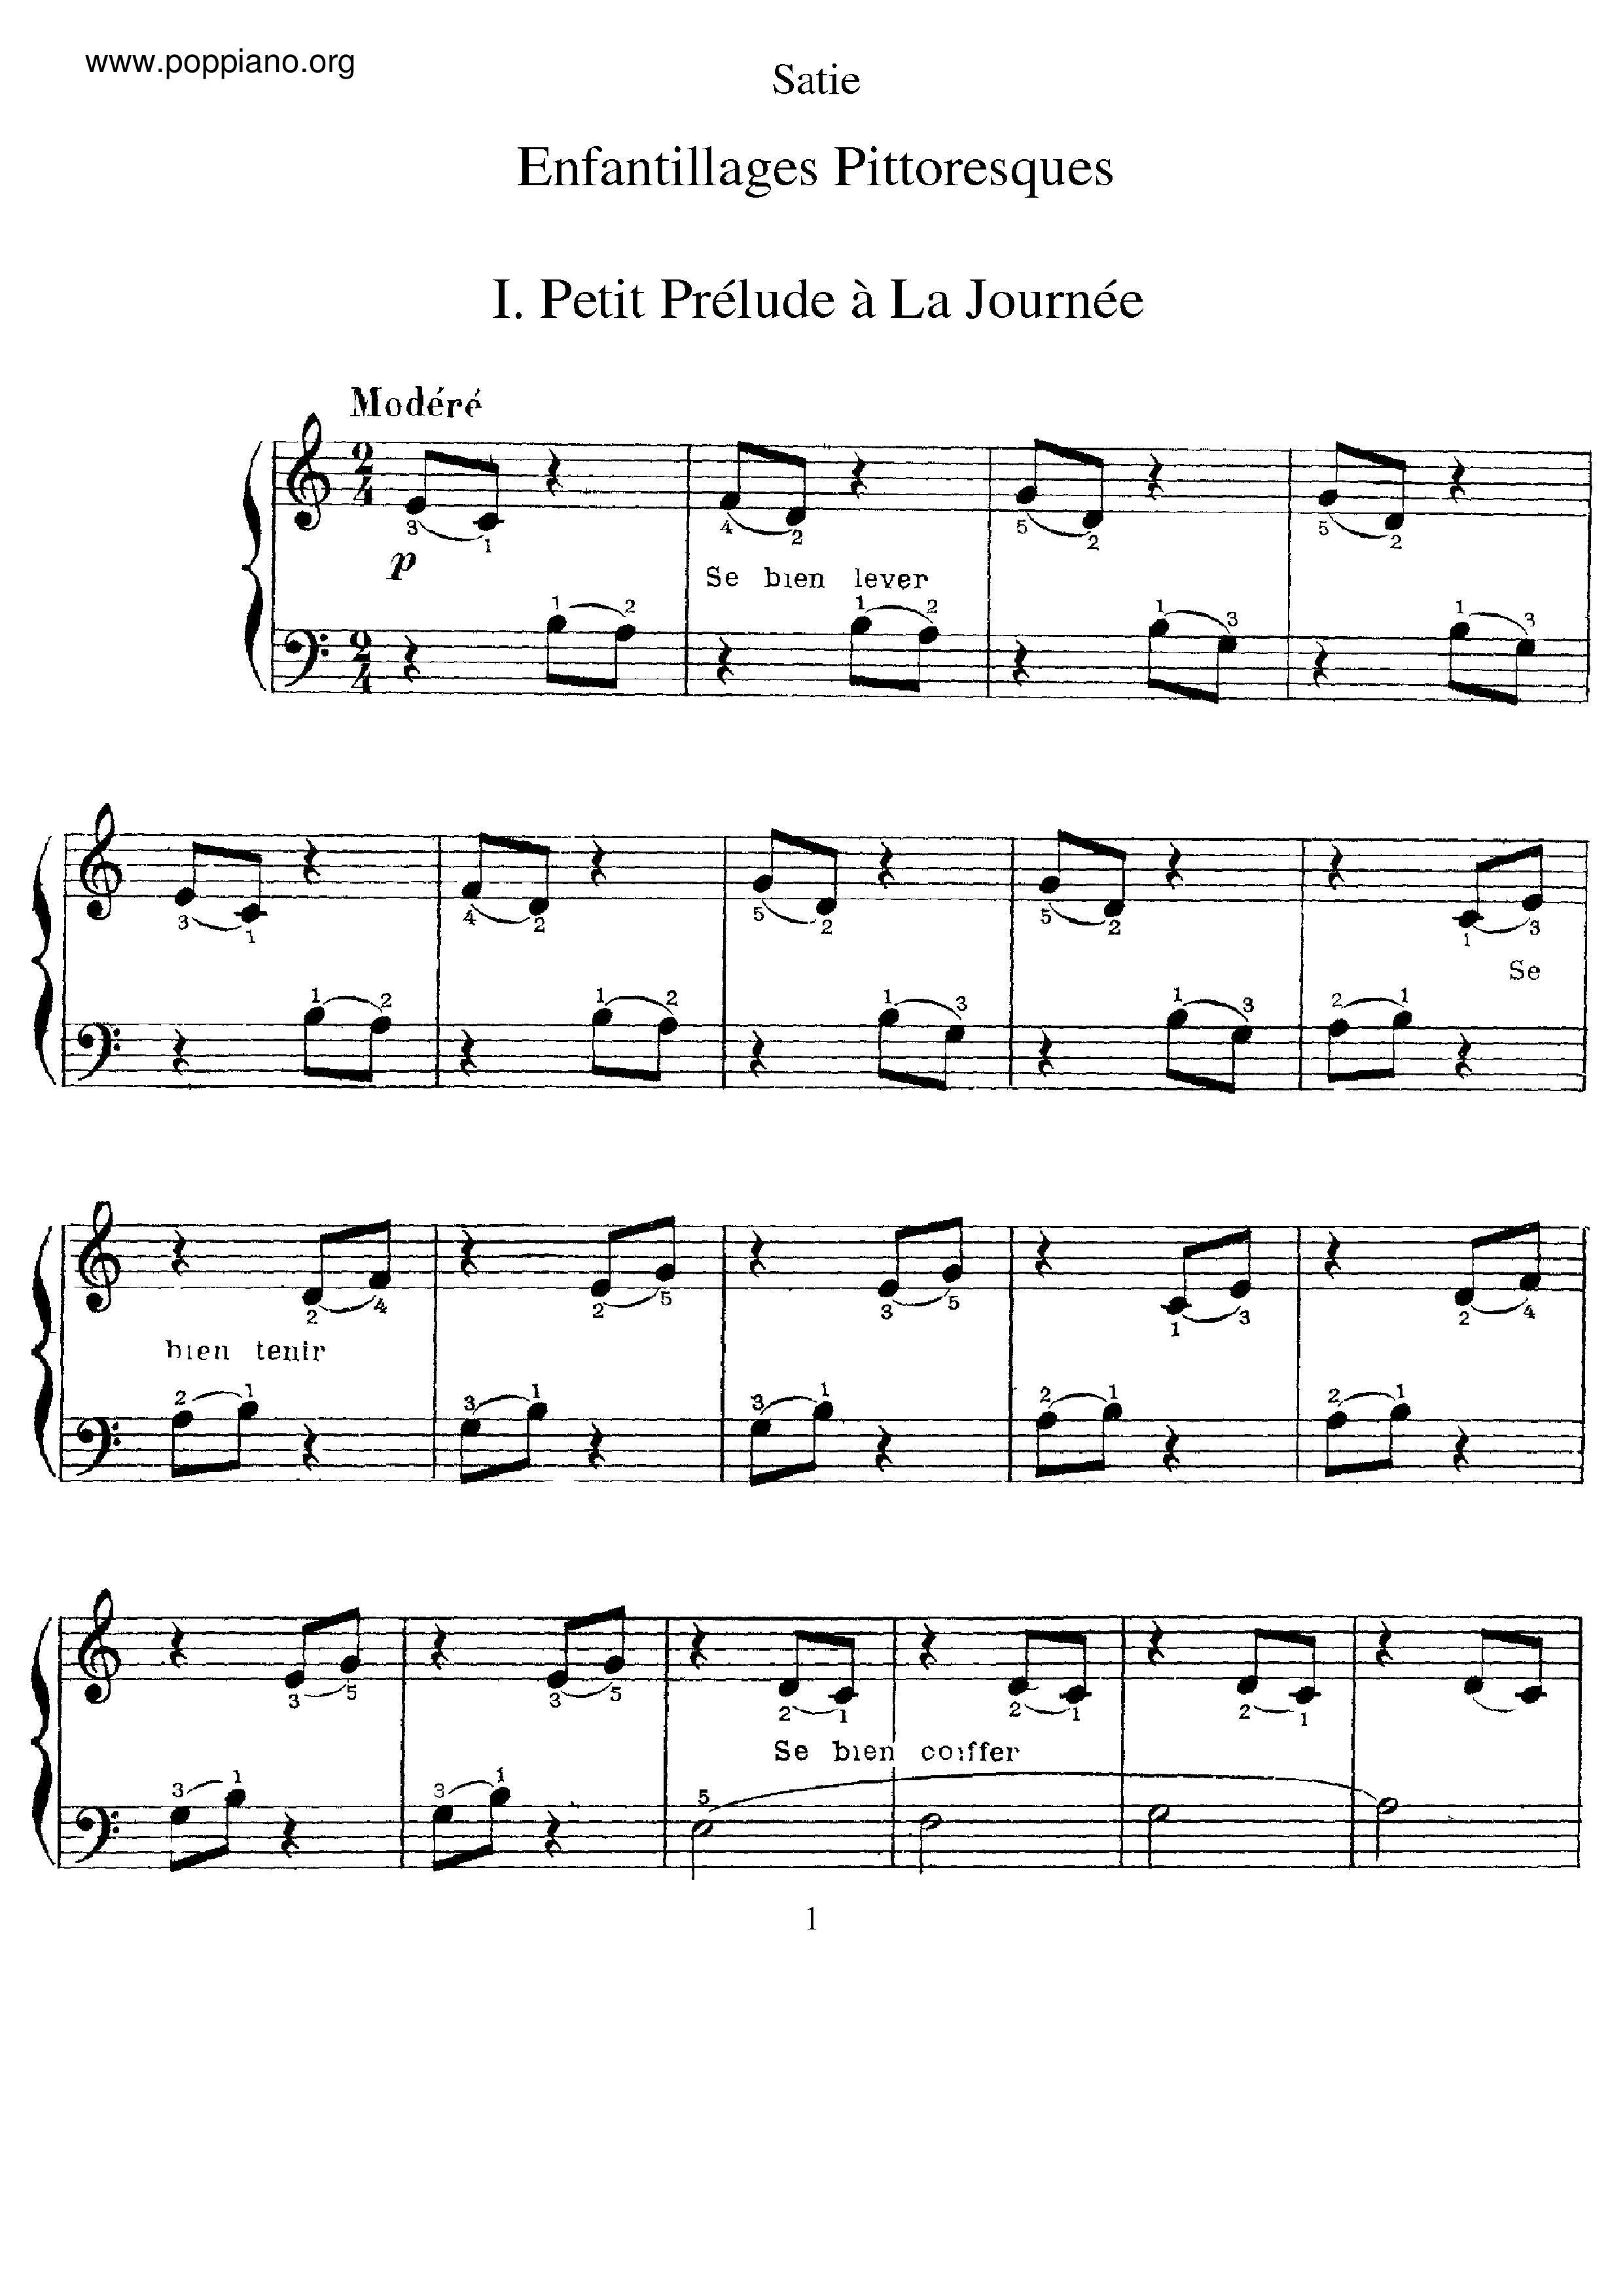 Enfantillages pittoresquesピアノ譜